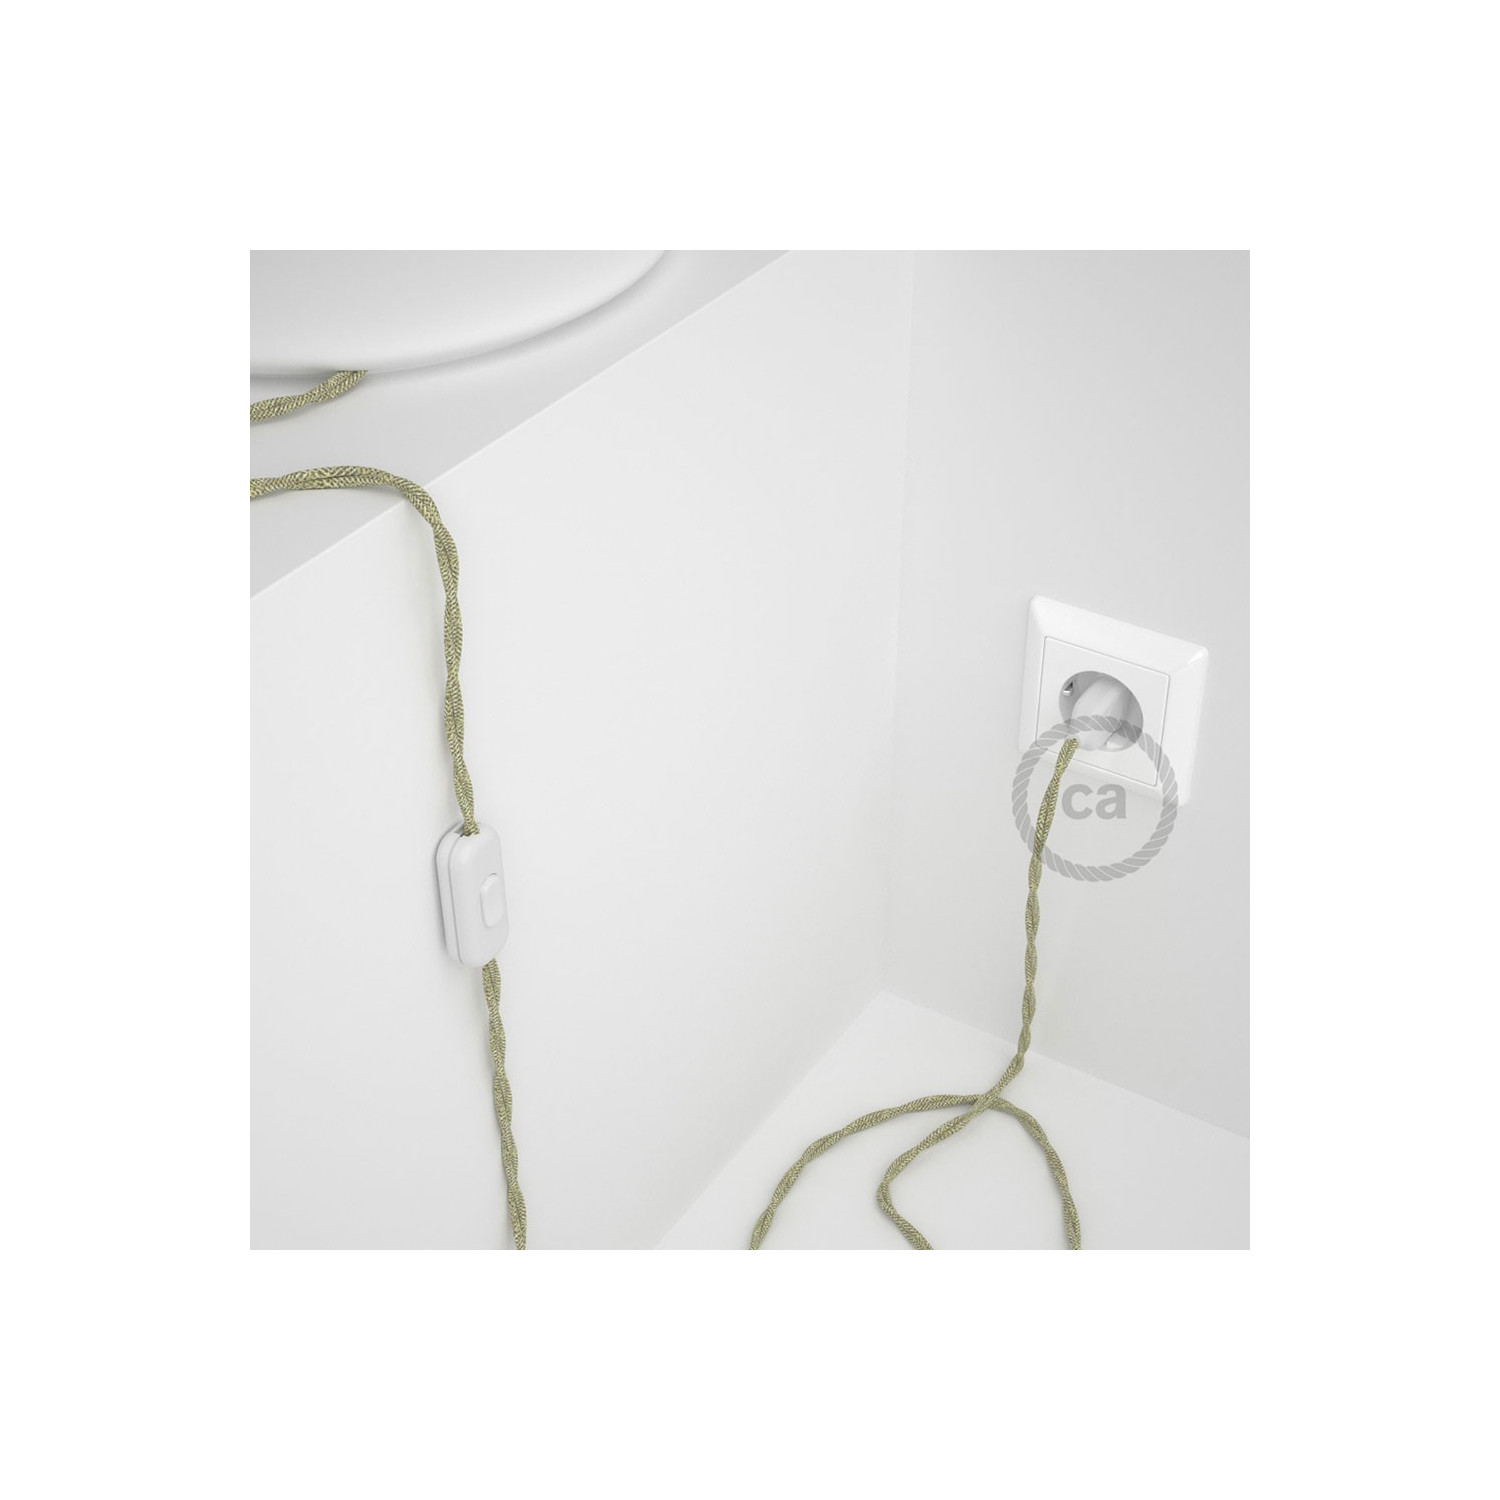 Cablaggio per lampada, cavo TN01 Lino Naturale Neutro 1,80 m. Scegli il colore dell'interuttore e della spina.